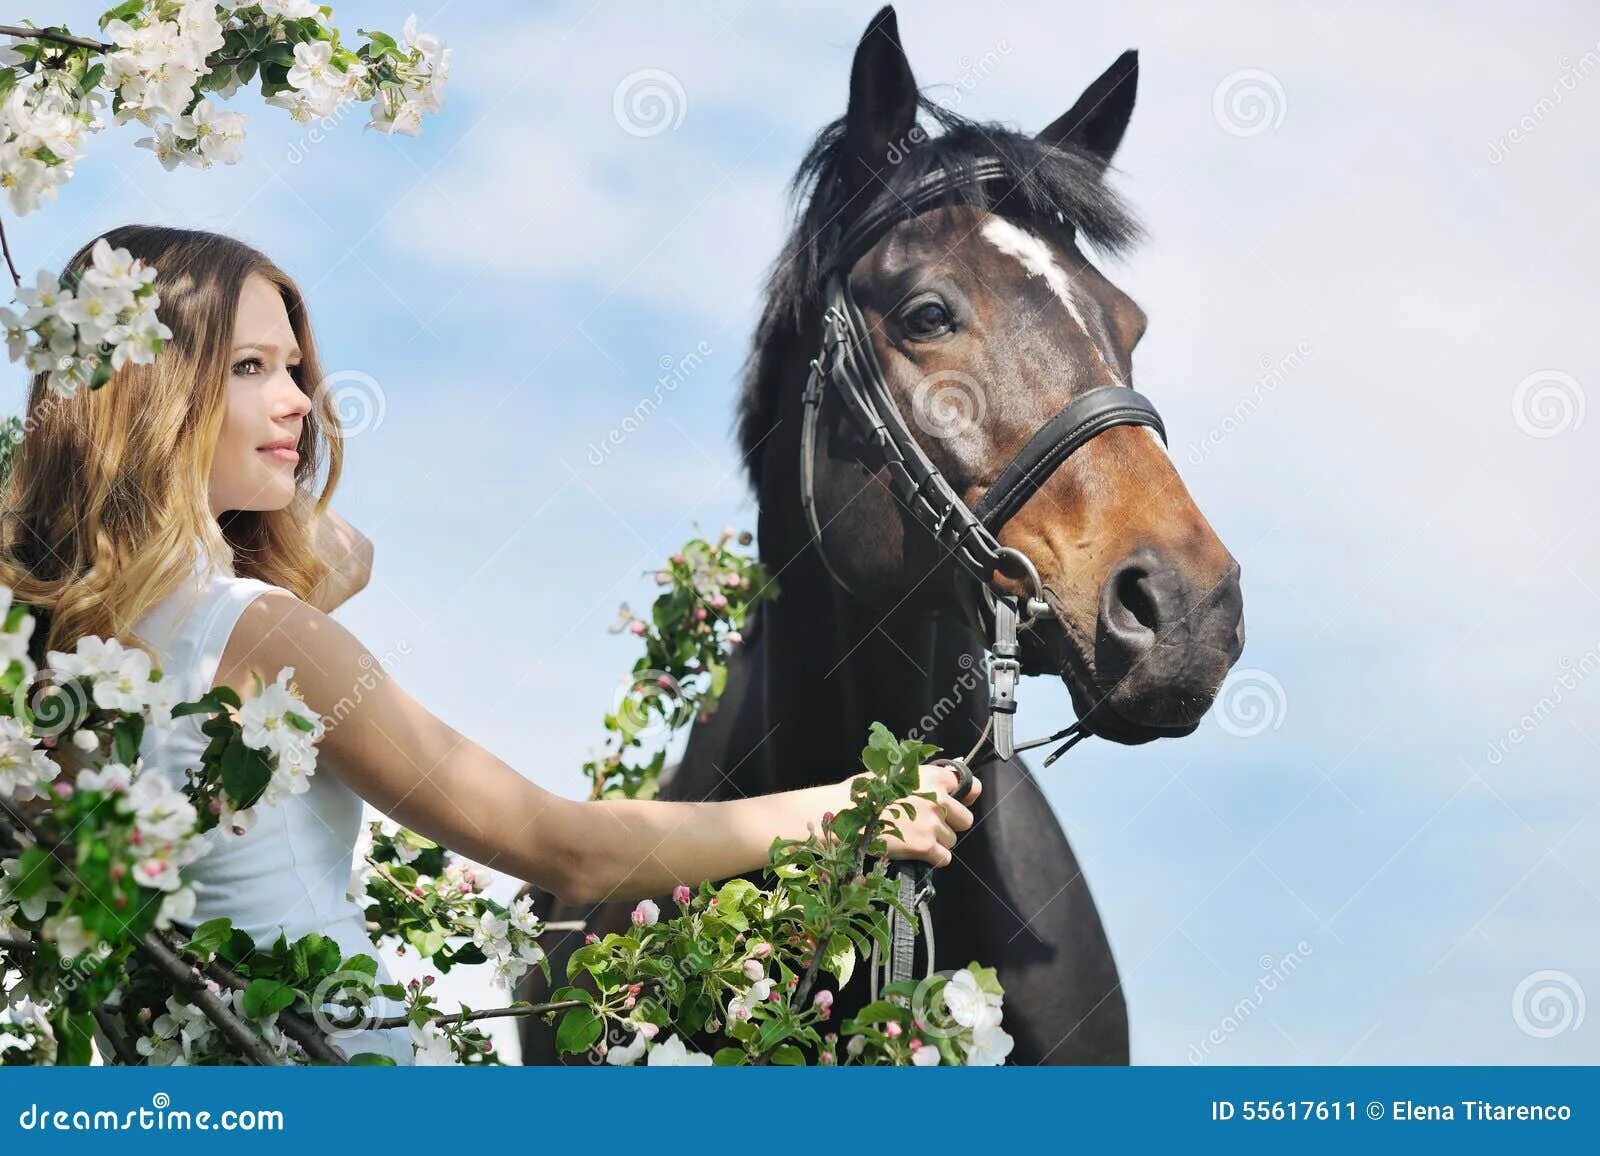 Мы вновь ехали на лошадях и любовались. Девушка с хвостом на лошади весной.